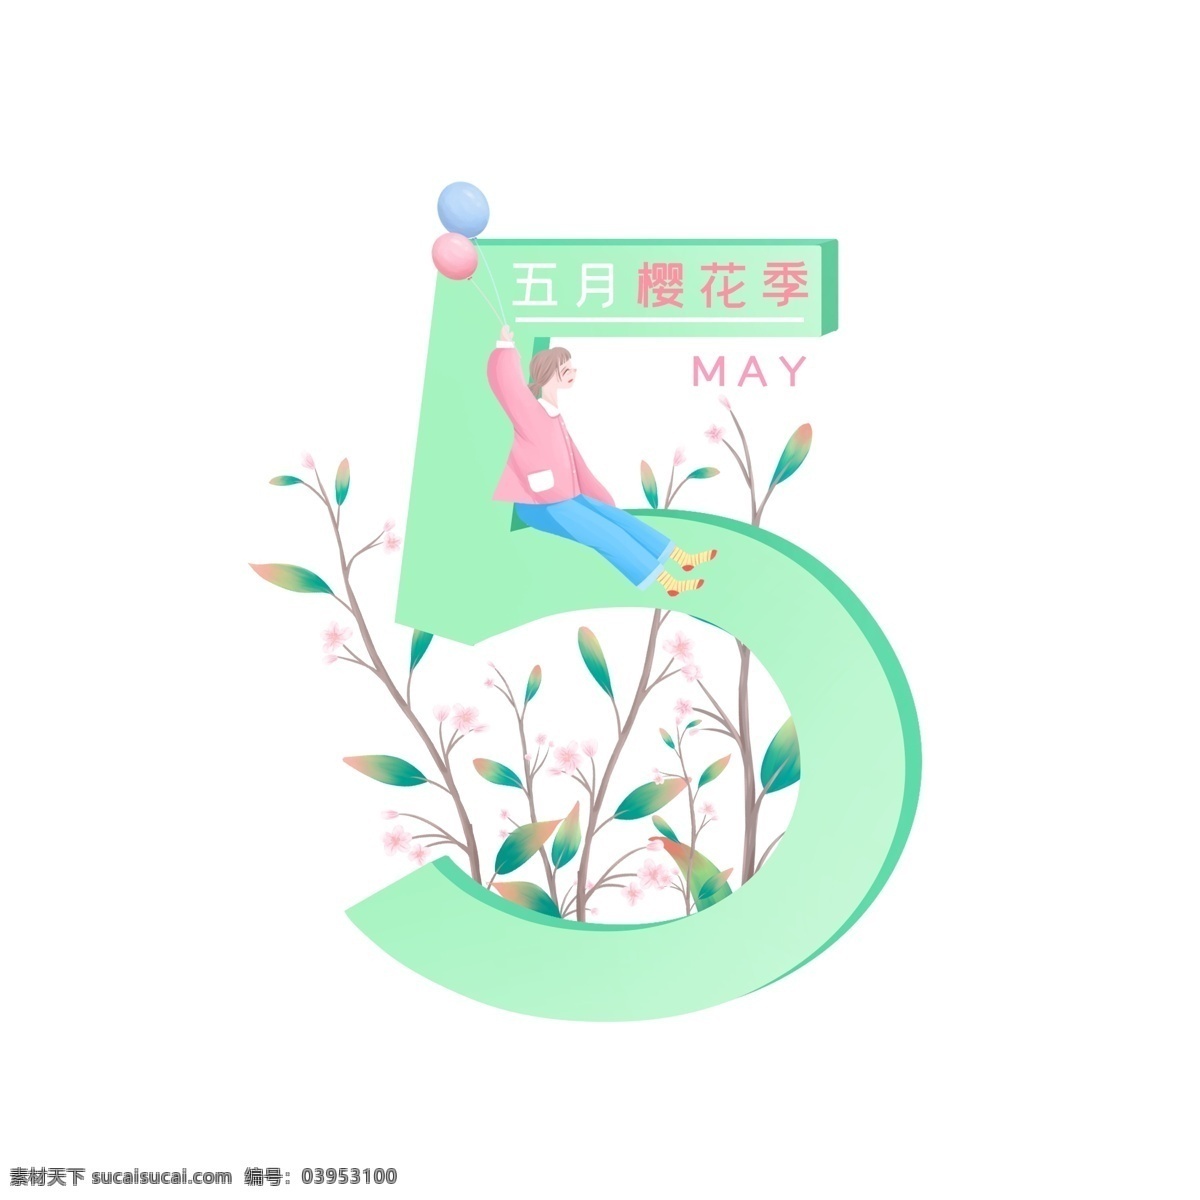 小 清新 五月 元素 樱花 季 春天 绿色 粉色 女孩 气球 树枝